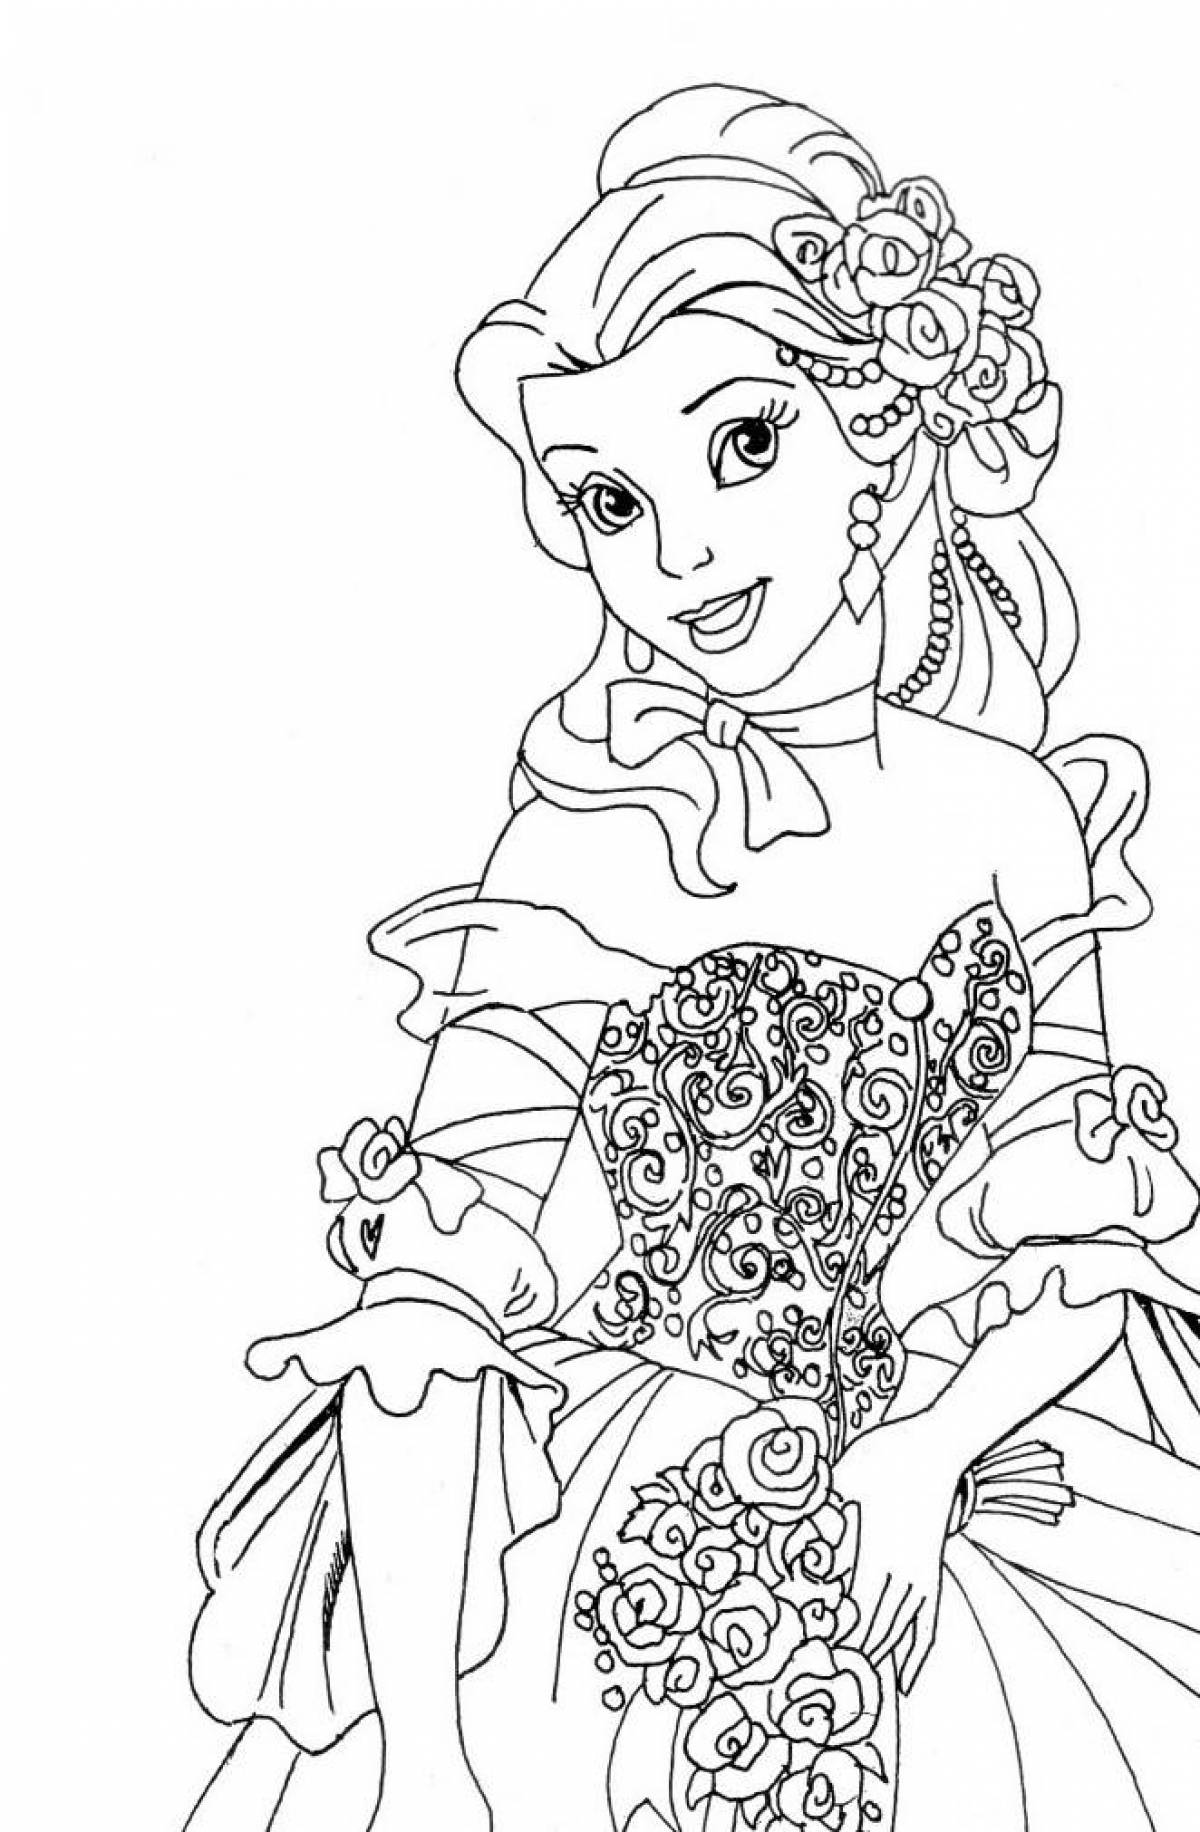 Delightful coloring of disney princesses in beautiful dresses